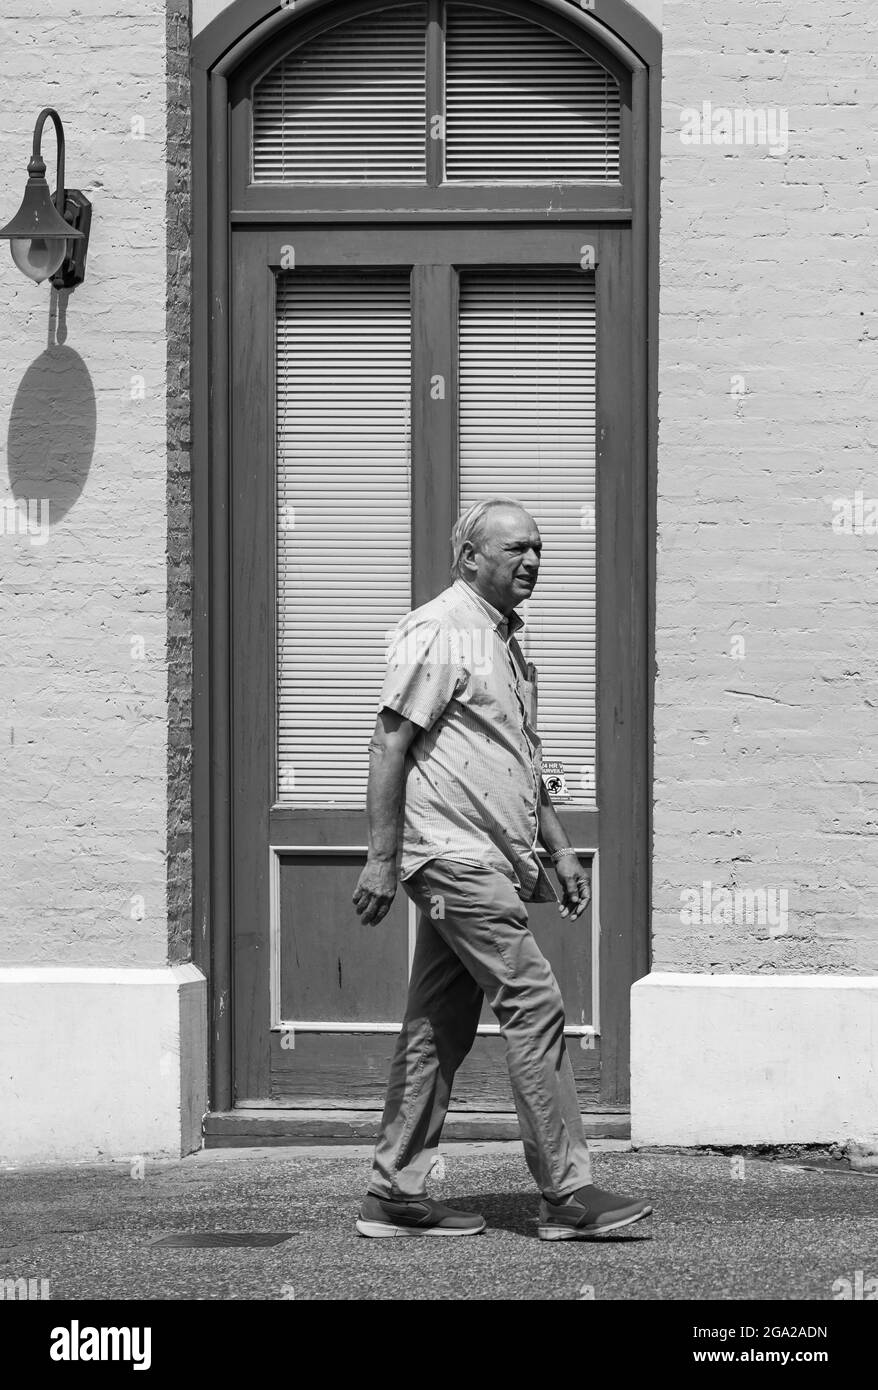 Un vecchio cammina su un marciapiede nel retro della porta dell'edificio. Foto in bianco e nero in stile vintage. Victoria, BC, Canada-Luglio 23,2021. Foto Stock